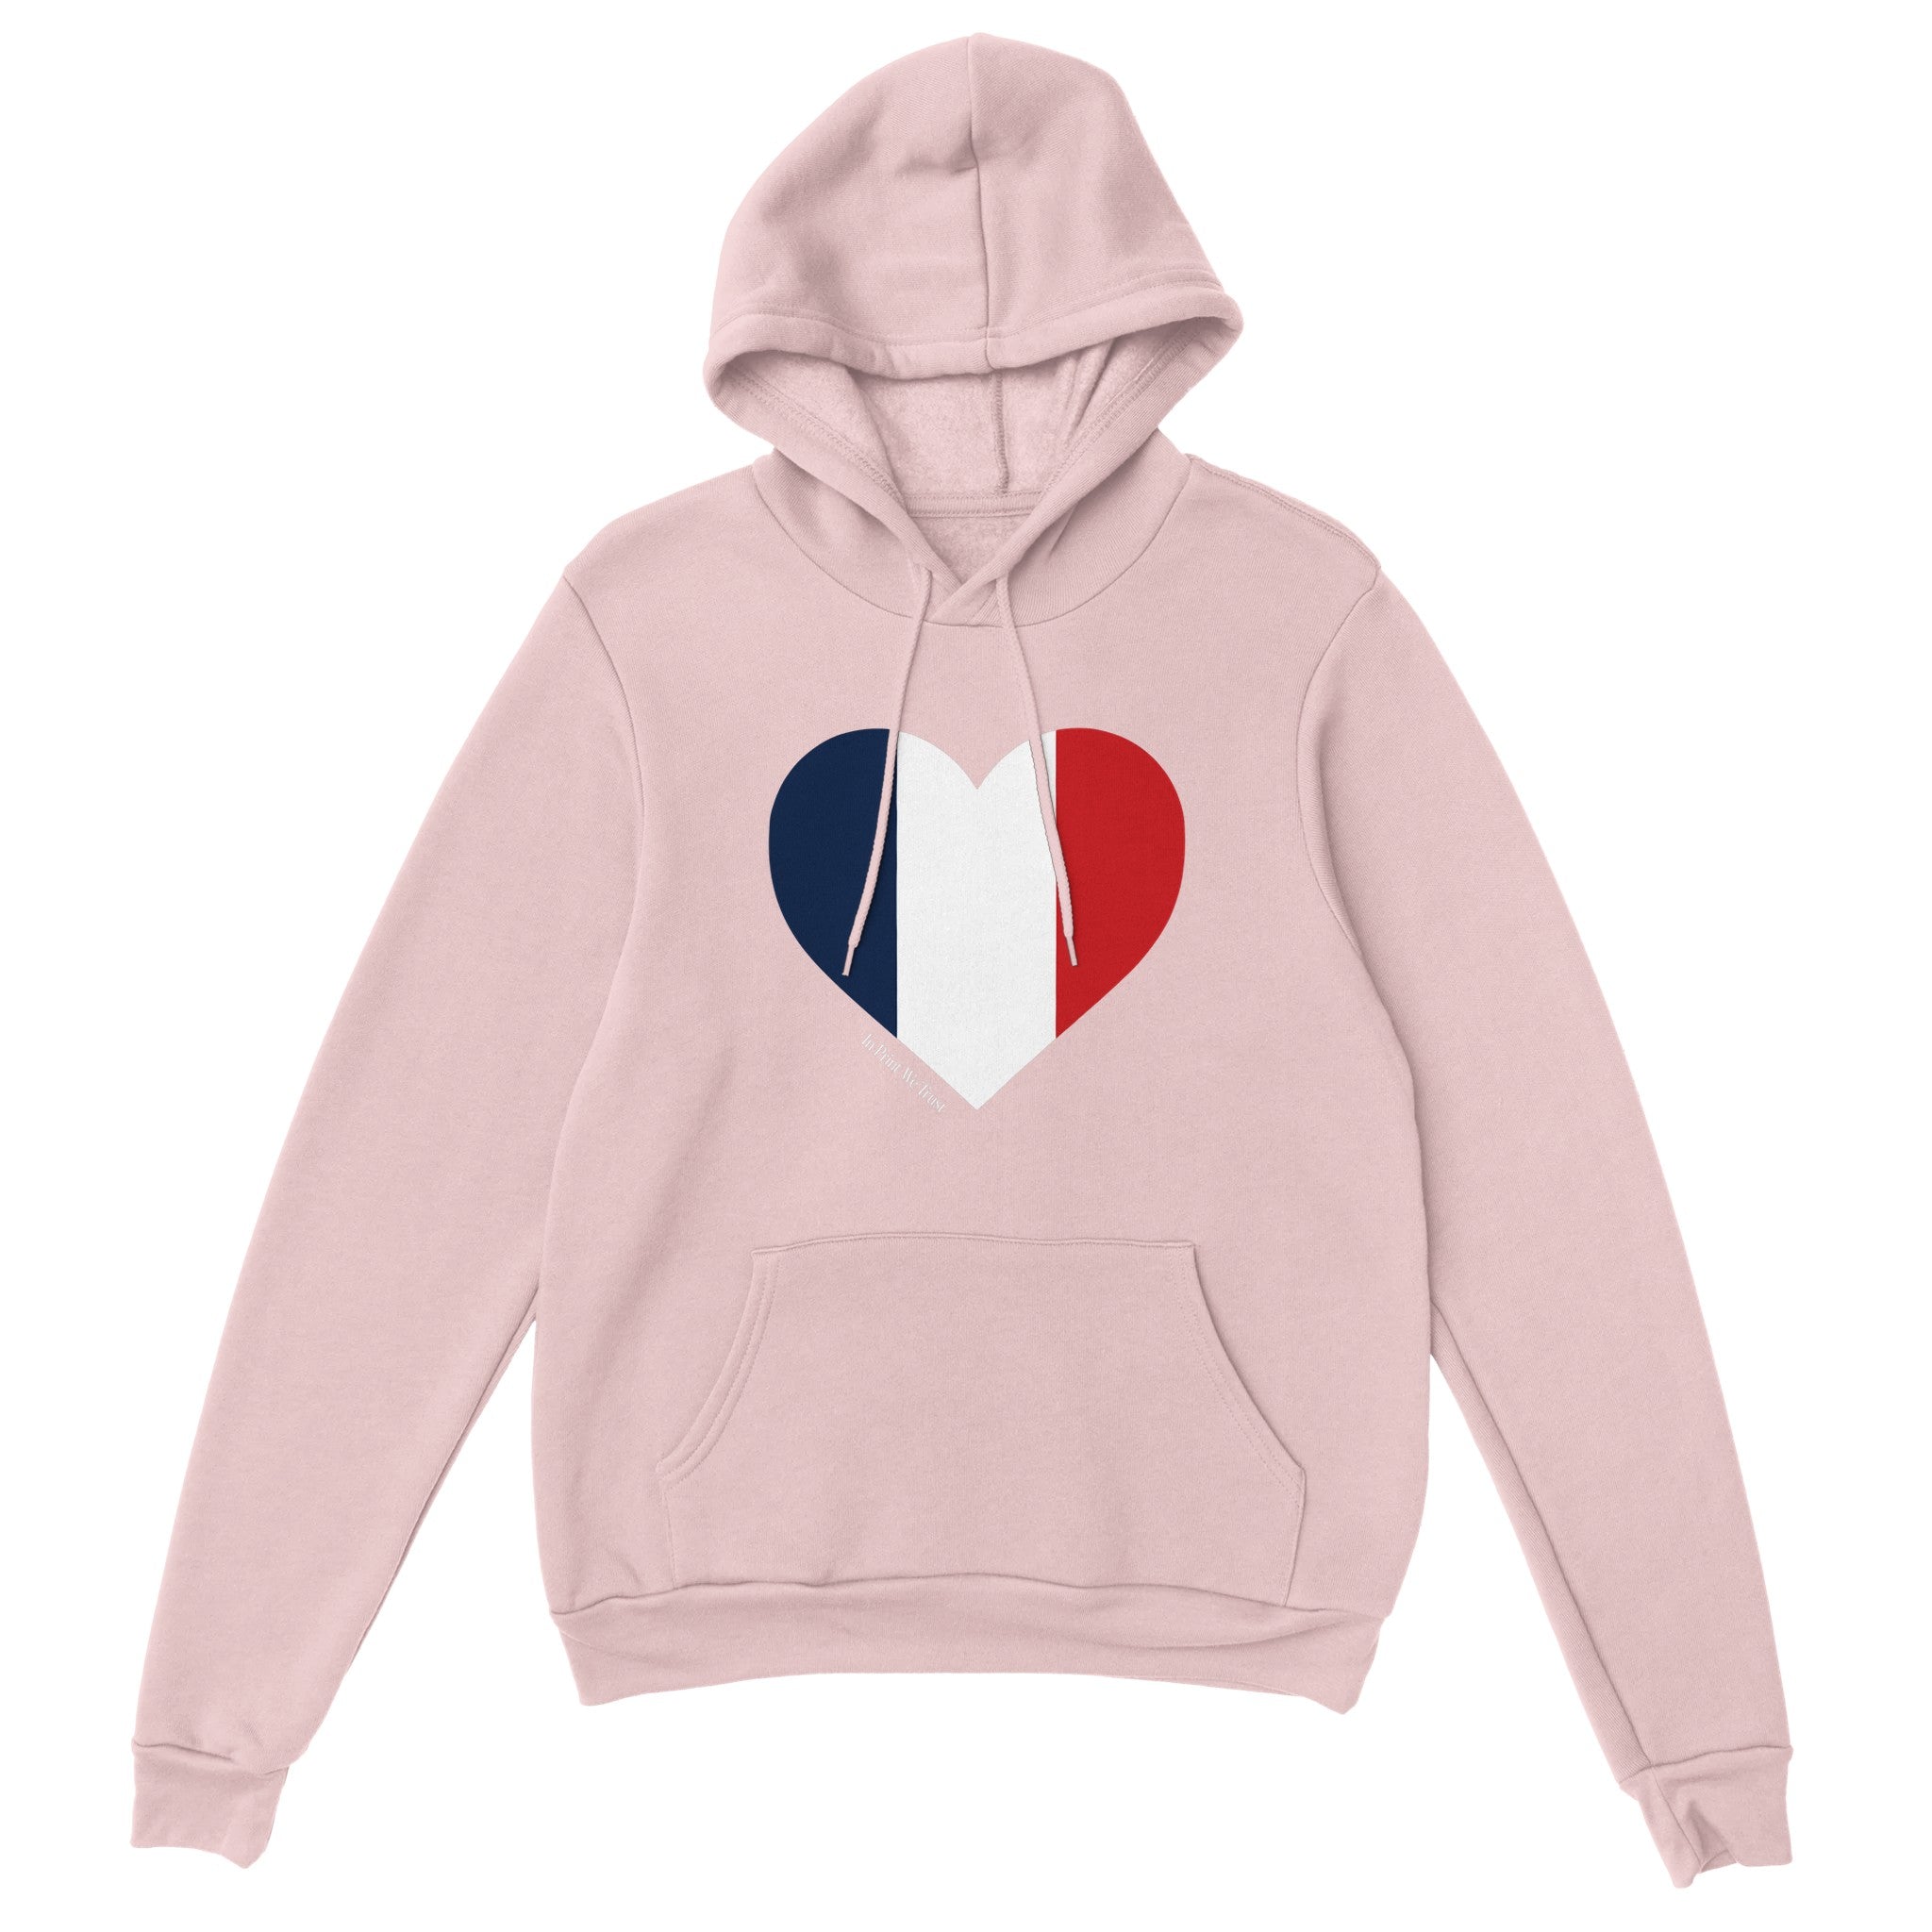 'France' hoodie - In Print We Trust